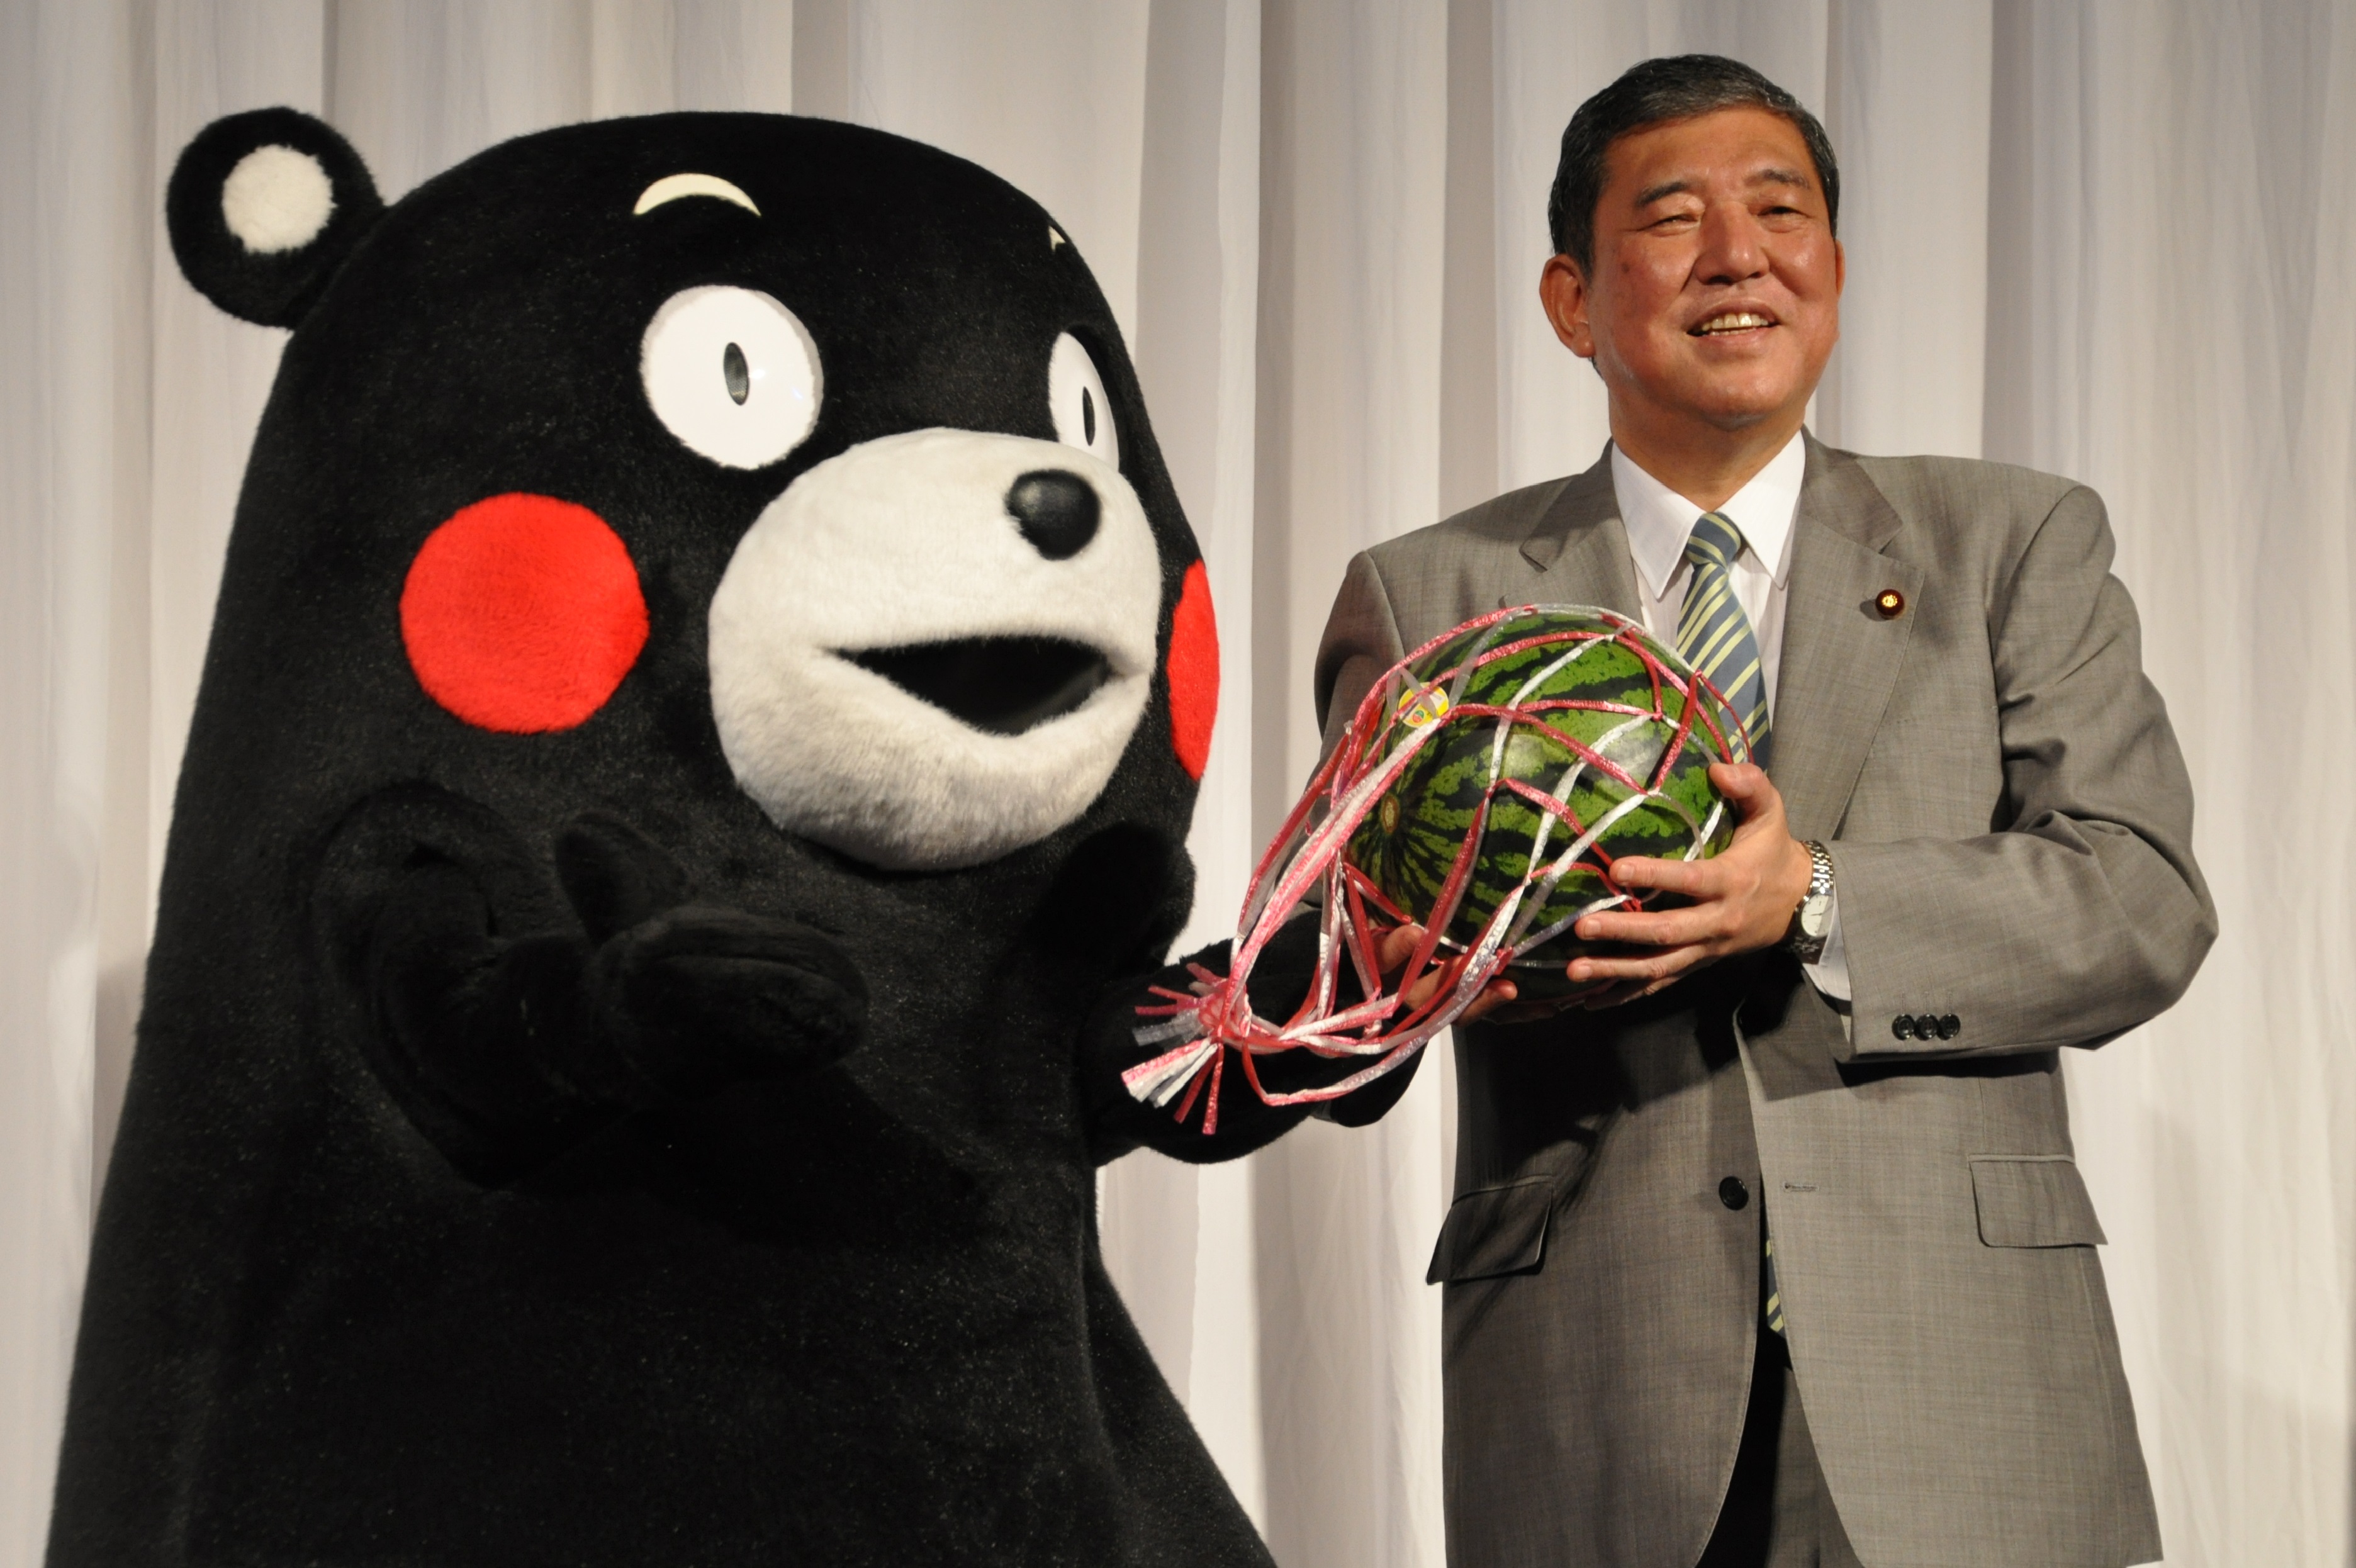 くまモンからスイカを贈られた石破担当相（右）=東京都港区の東京ミッドタウン・ホールで